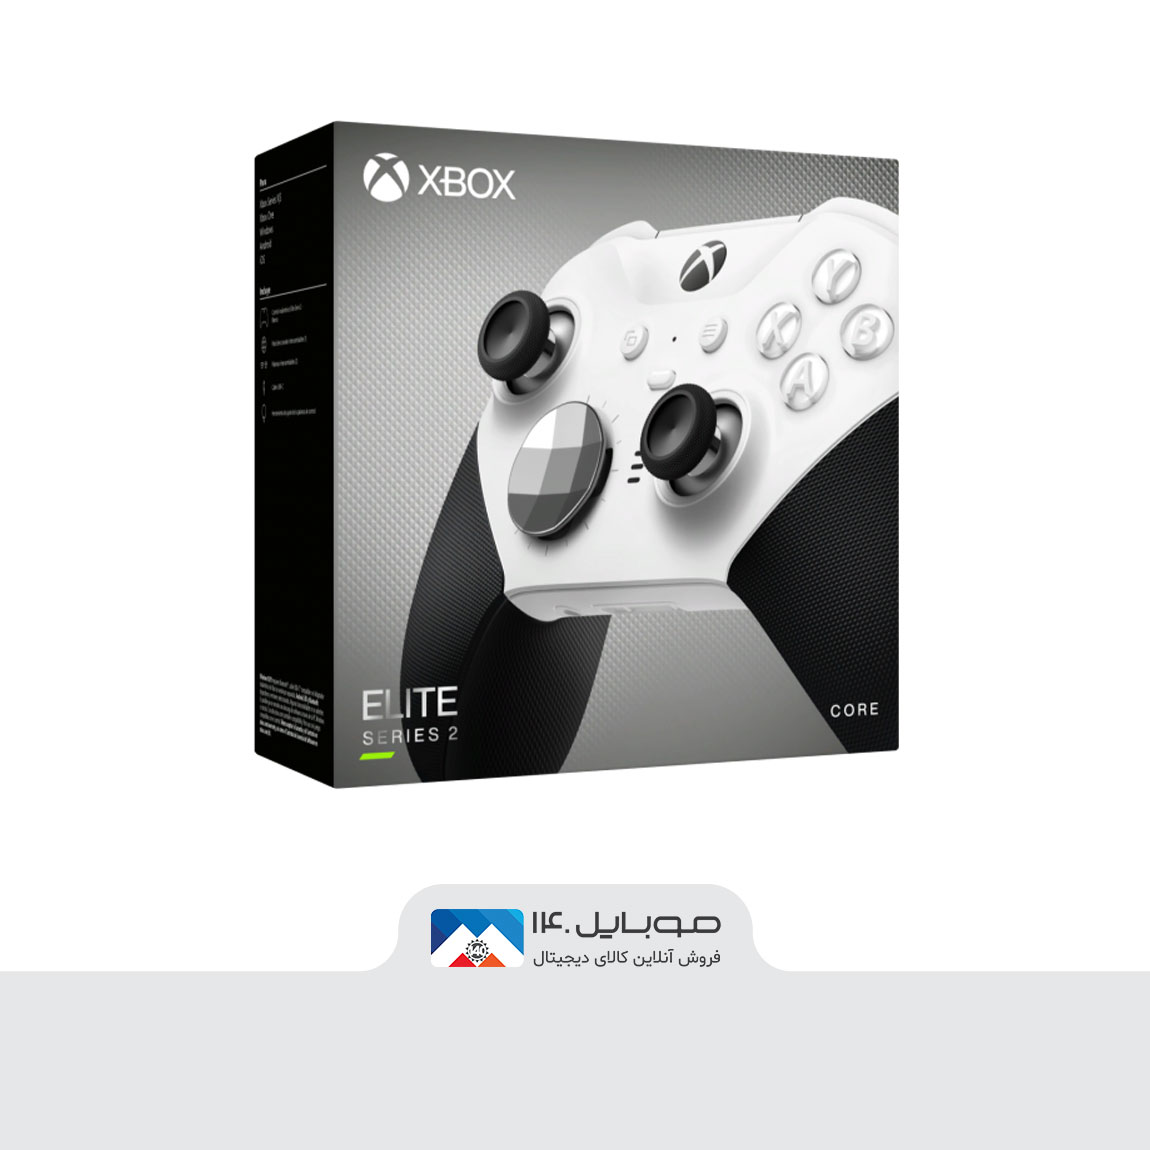 Xbox Elite Wireless Controller For Series 2- White   1